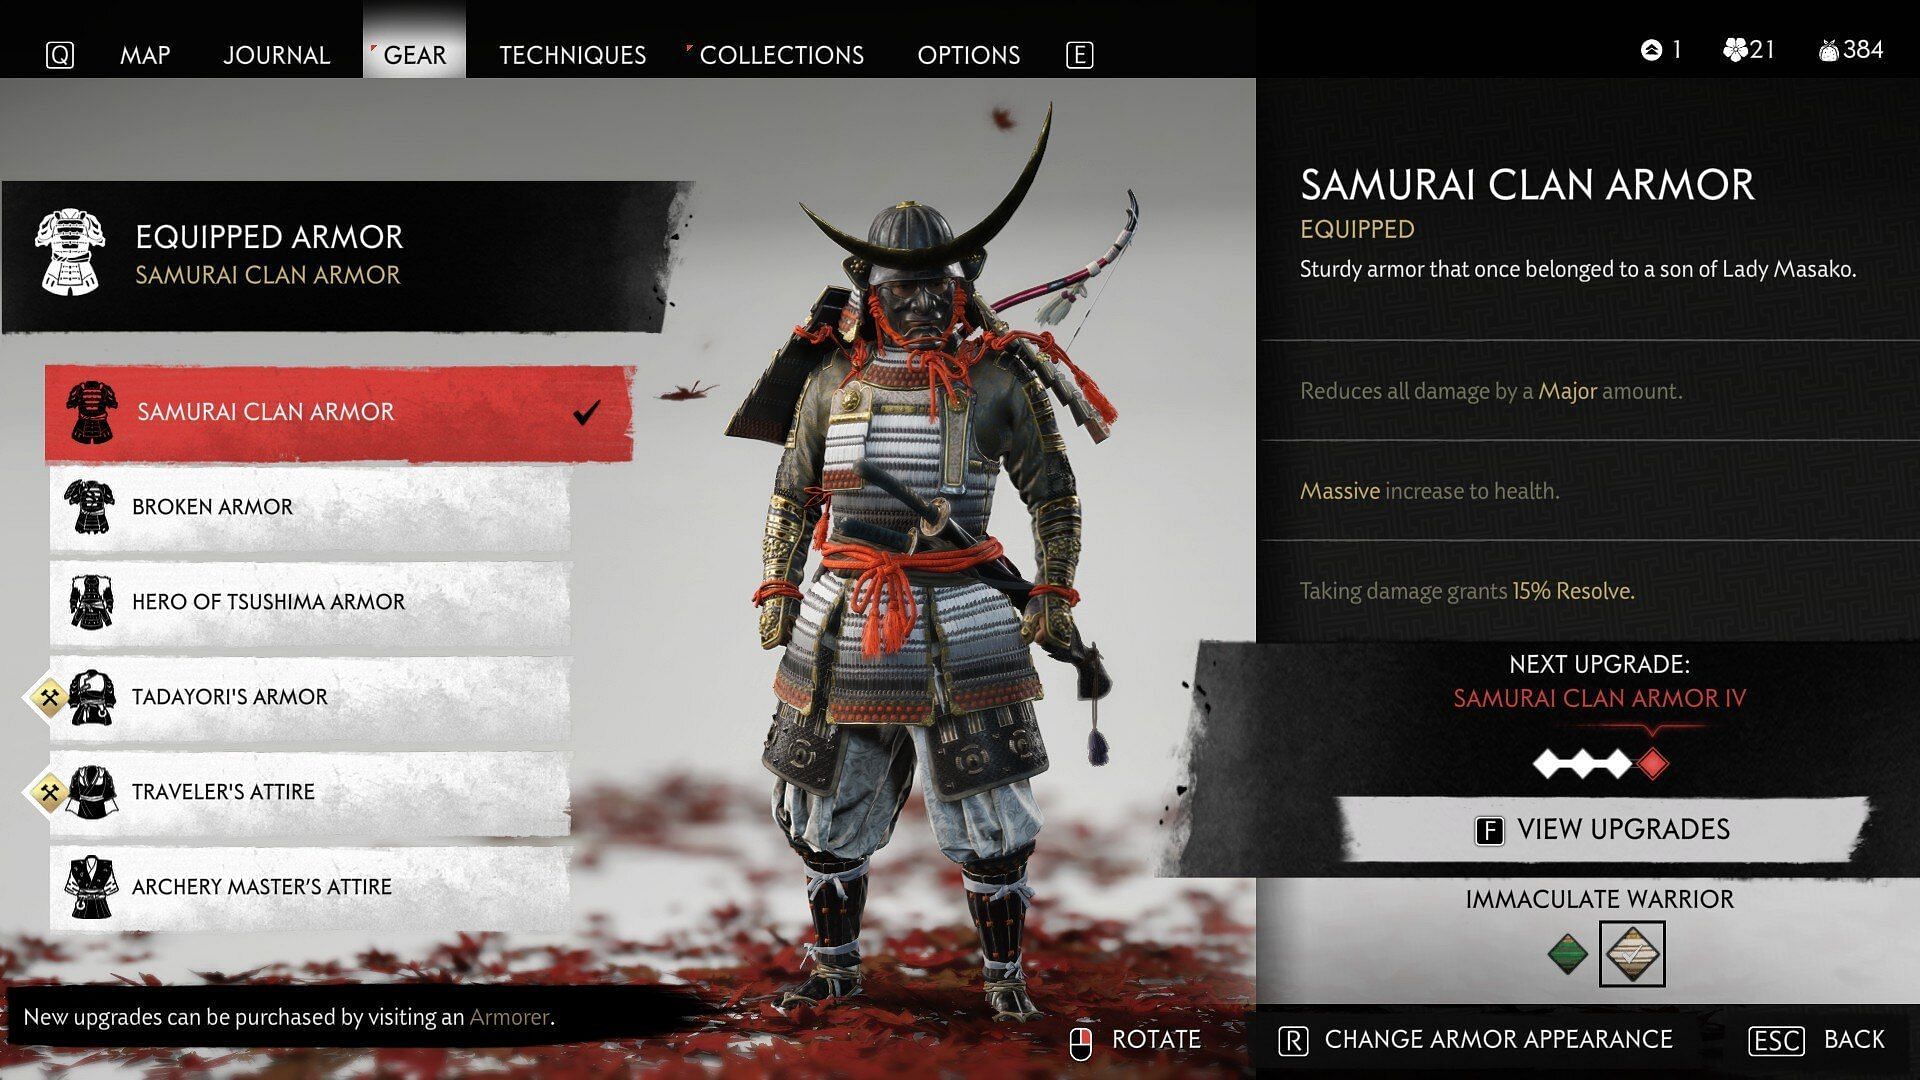 The Samurai Clan Armor (Image via Nixxes Software)